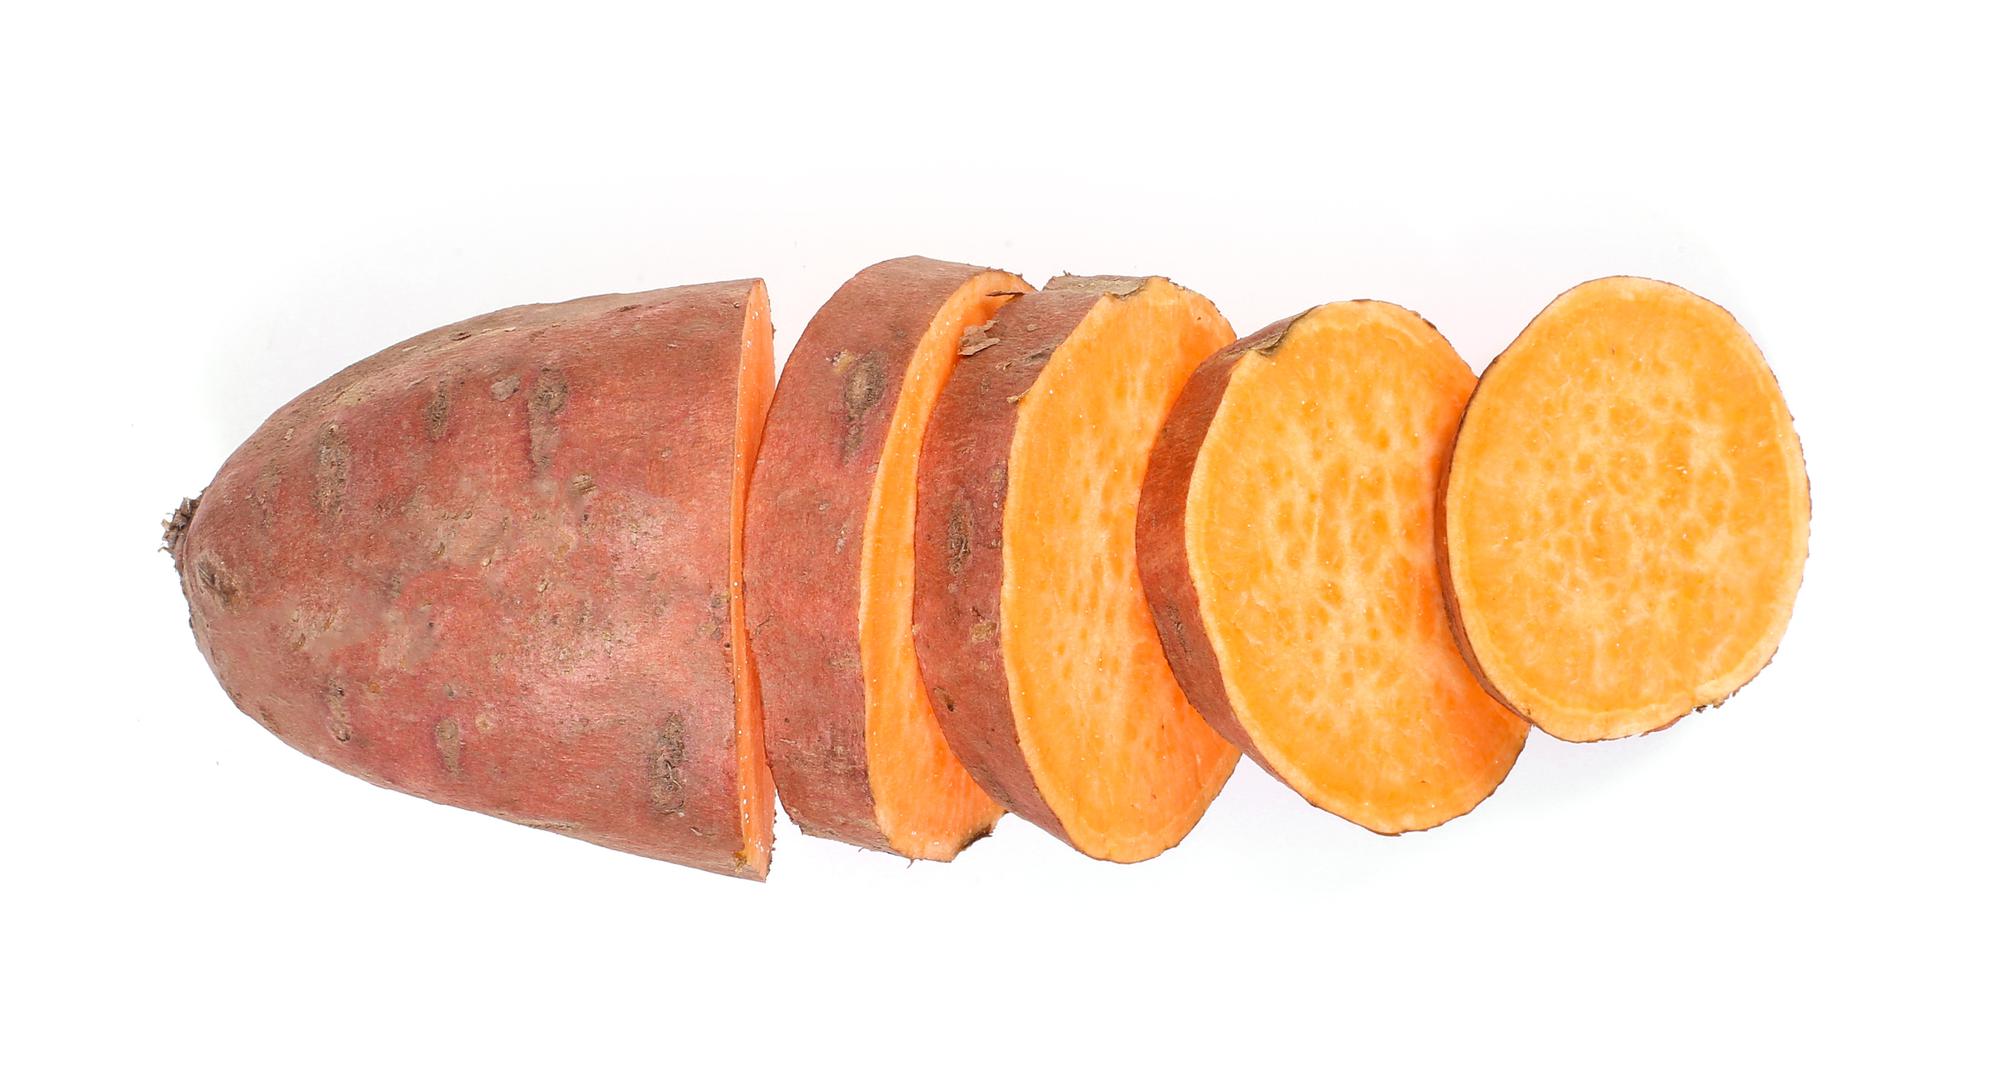 Batat i krumpir držite odvojeno, najbolje u papirnatoj vrećici i ne u hladnjaku. 